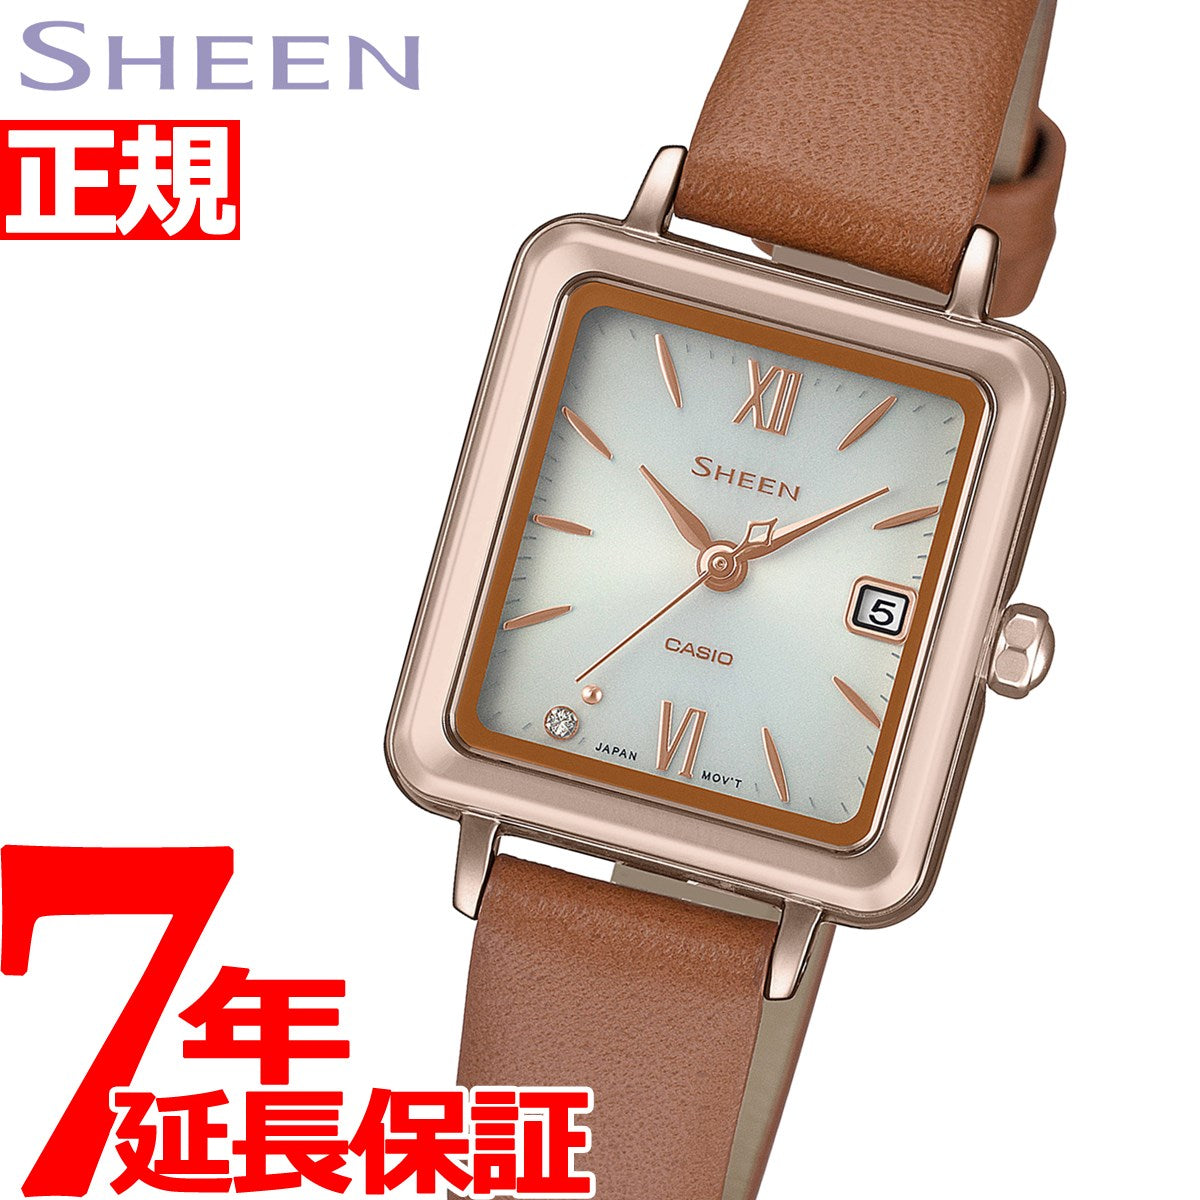 カシオ シーン CASIO SHEEN ソーラー 腕時計 レディース SHS-D400CGL-7AJF